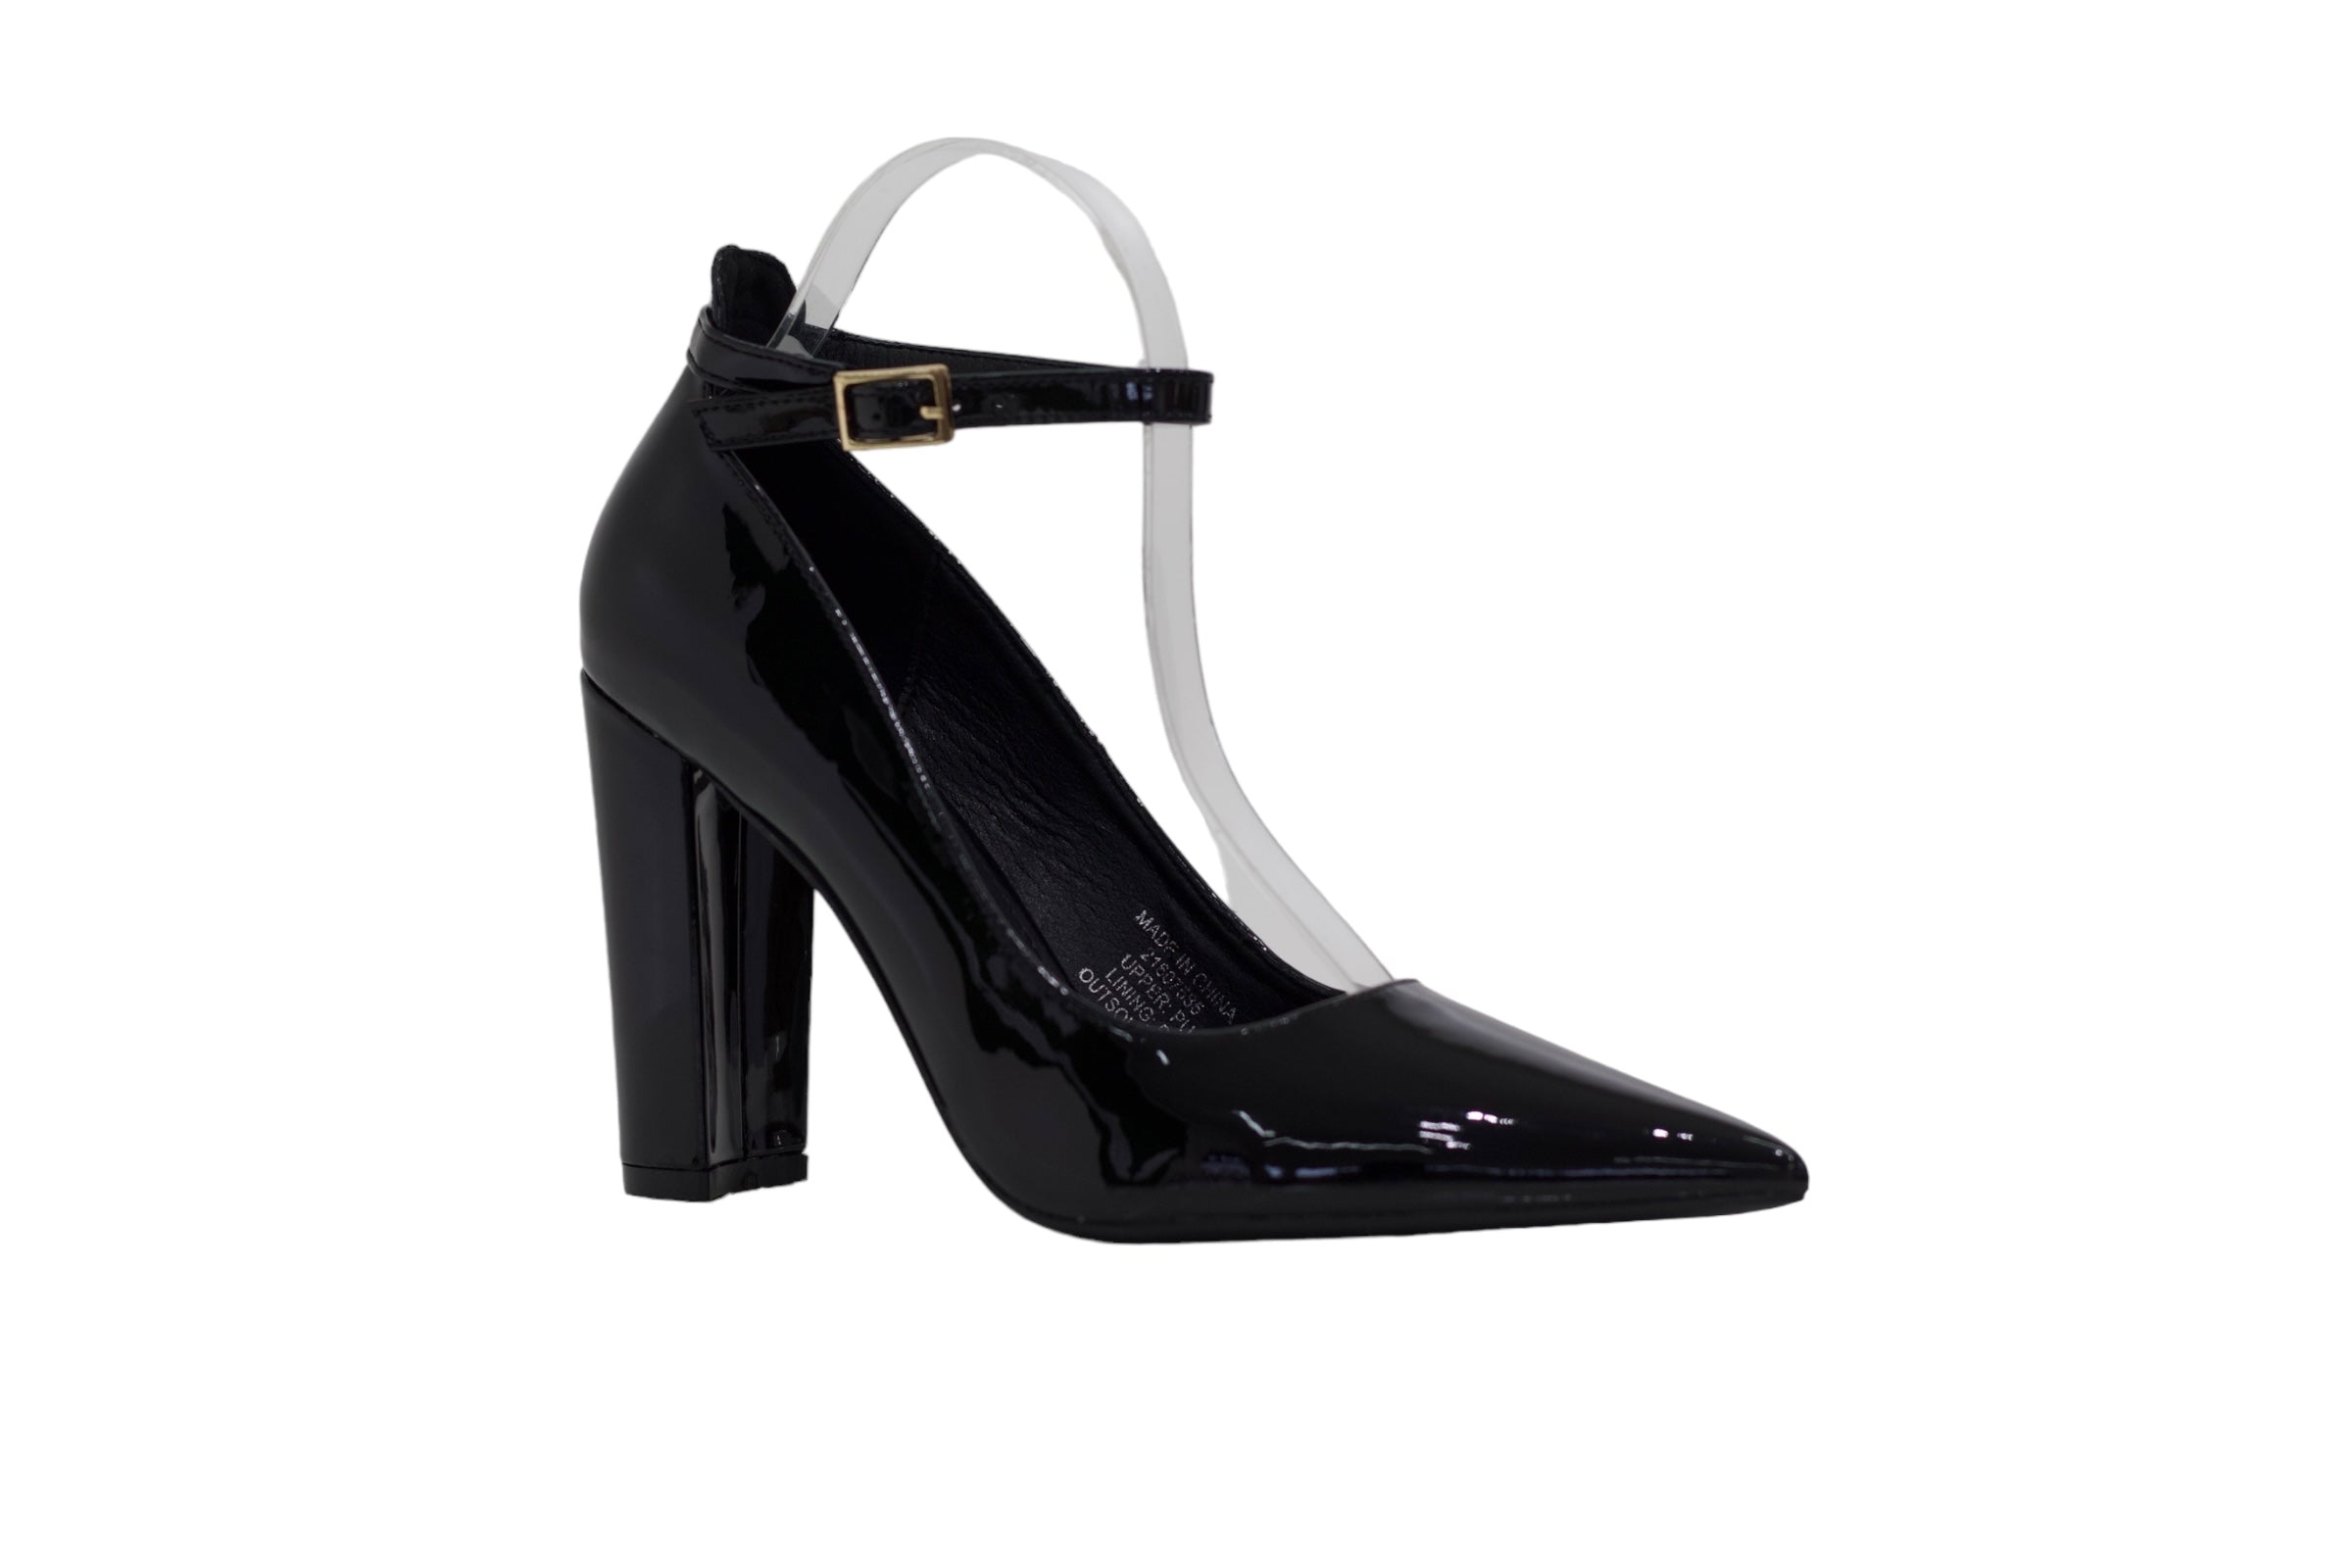 Black ankle strap pat court shoe on 10cm heel major